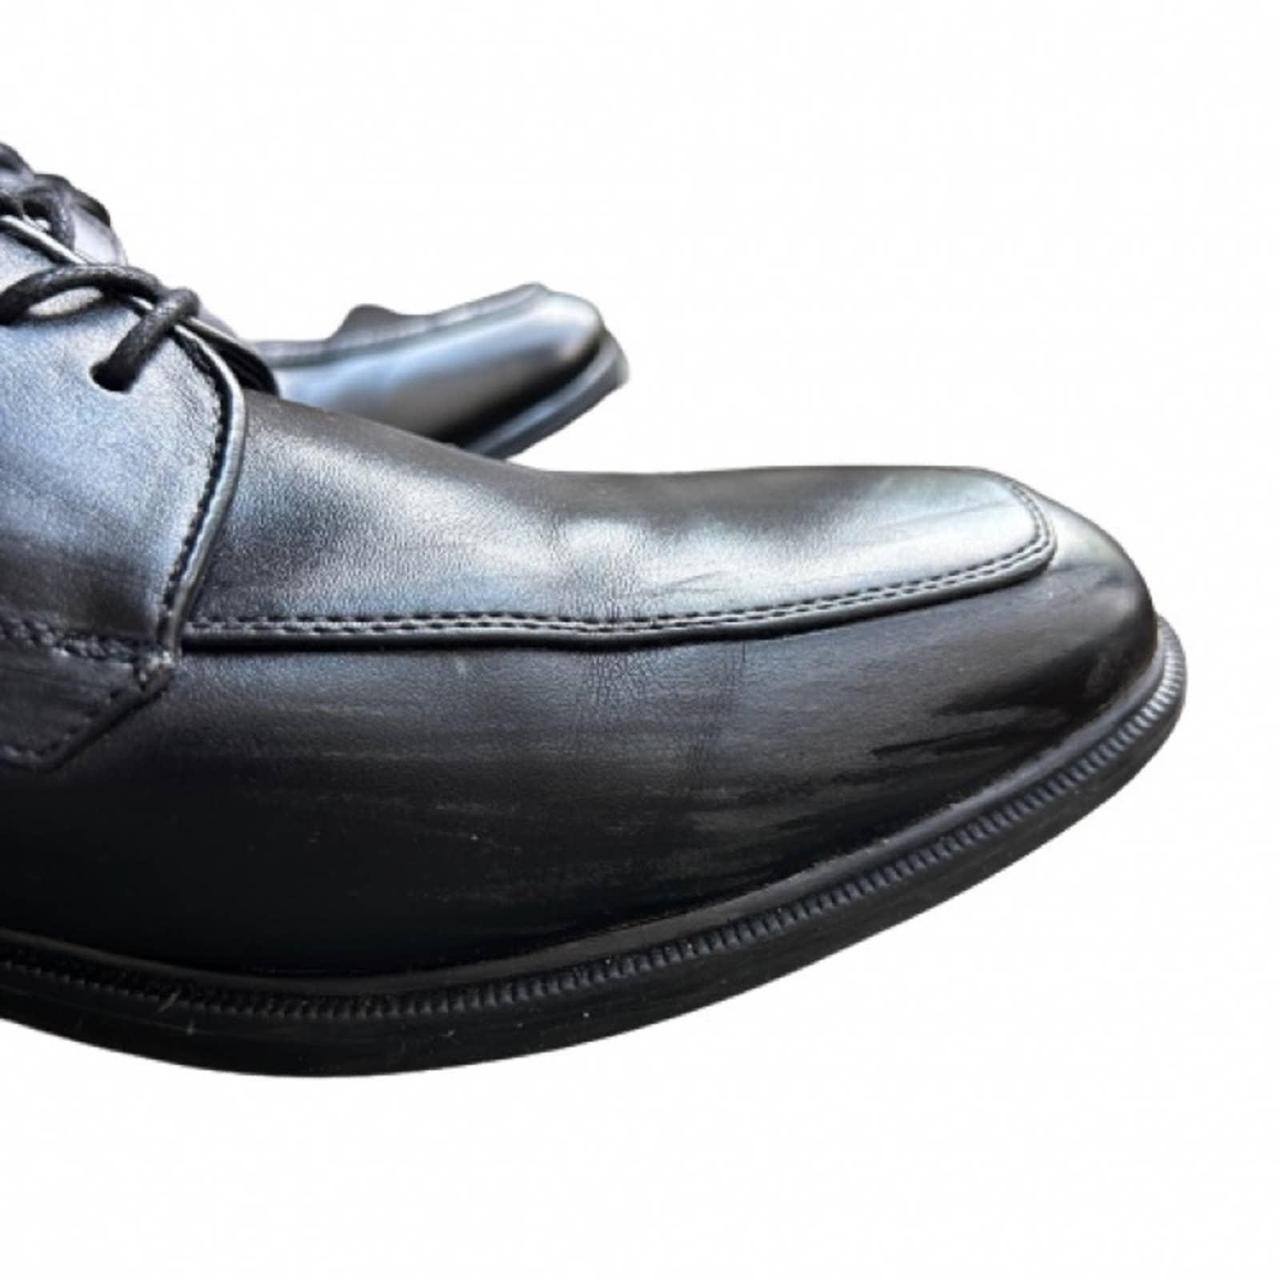  Van Heusen Men's Director Dress Shoes Oxford, Black, 8